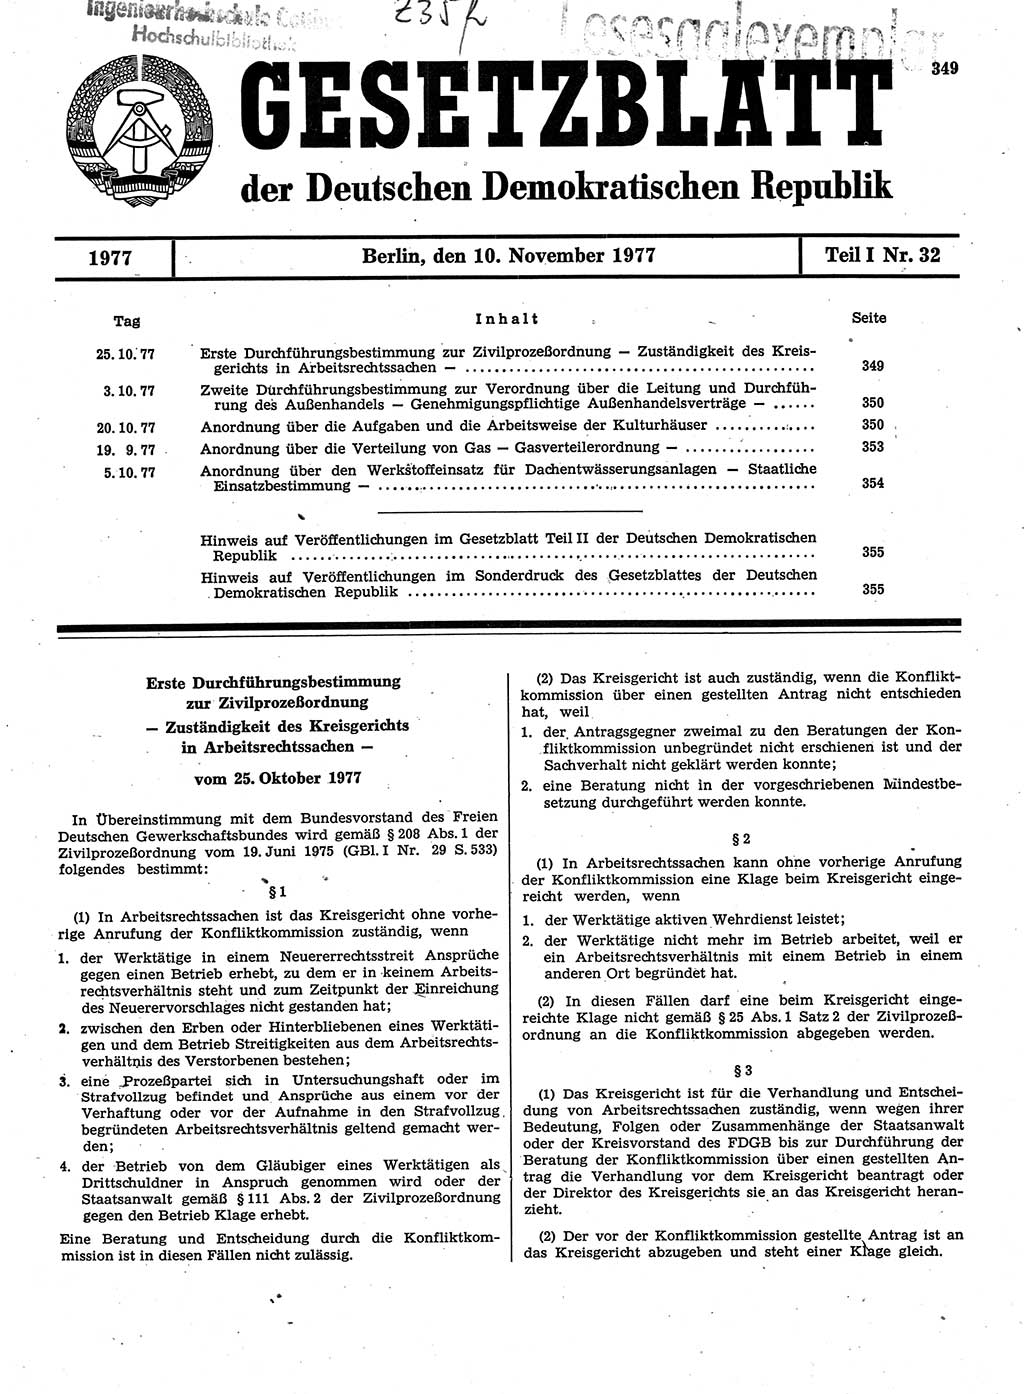 Gesetzblatt (GBl.) der Deutschen Demokratischen Republik (DDR) Teil Ⅰ 1977, Seite 349 (GBl. DDR Ⅰ 1977, S. 349)